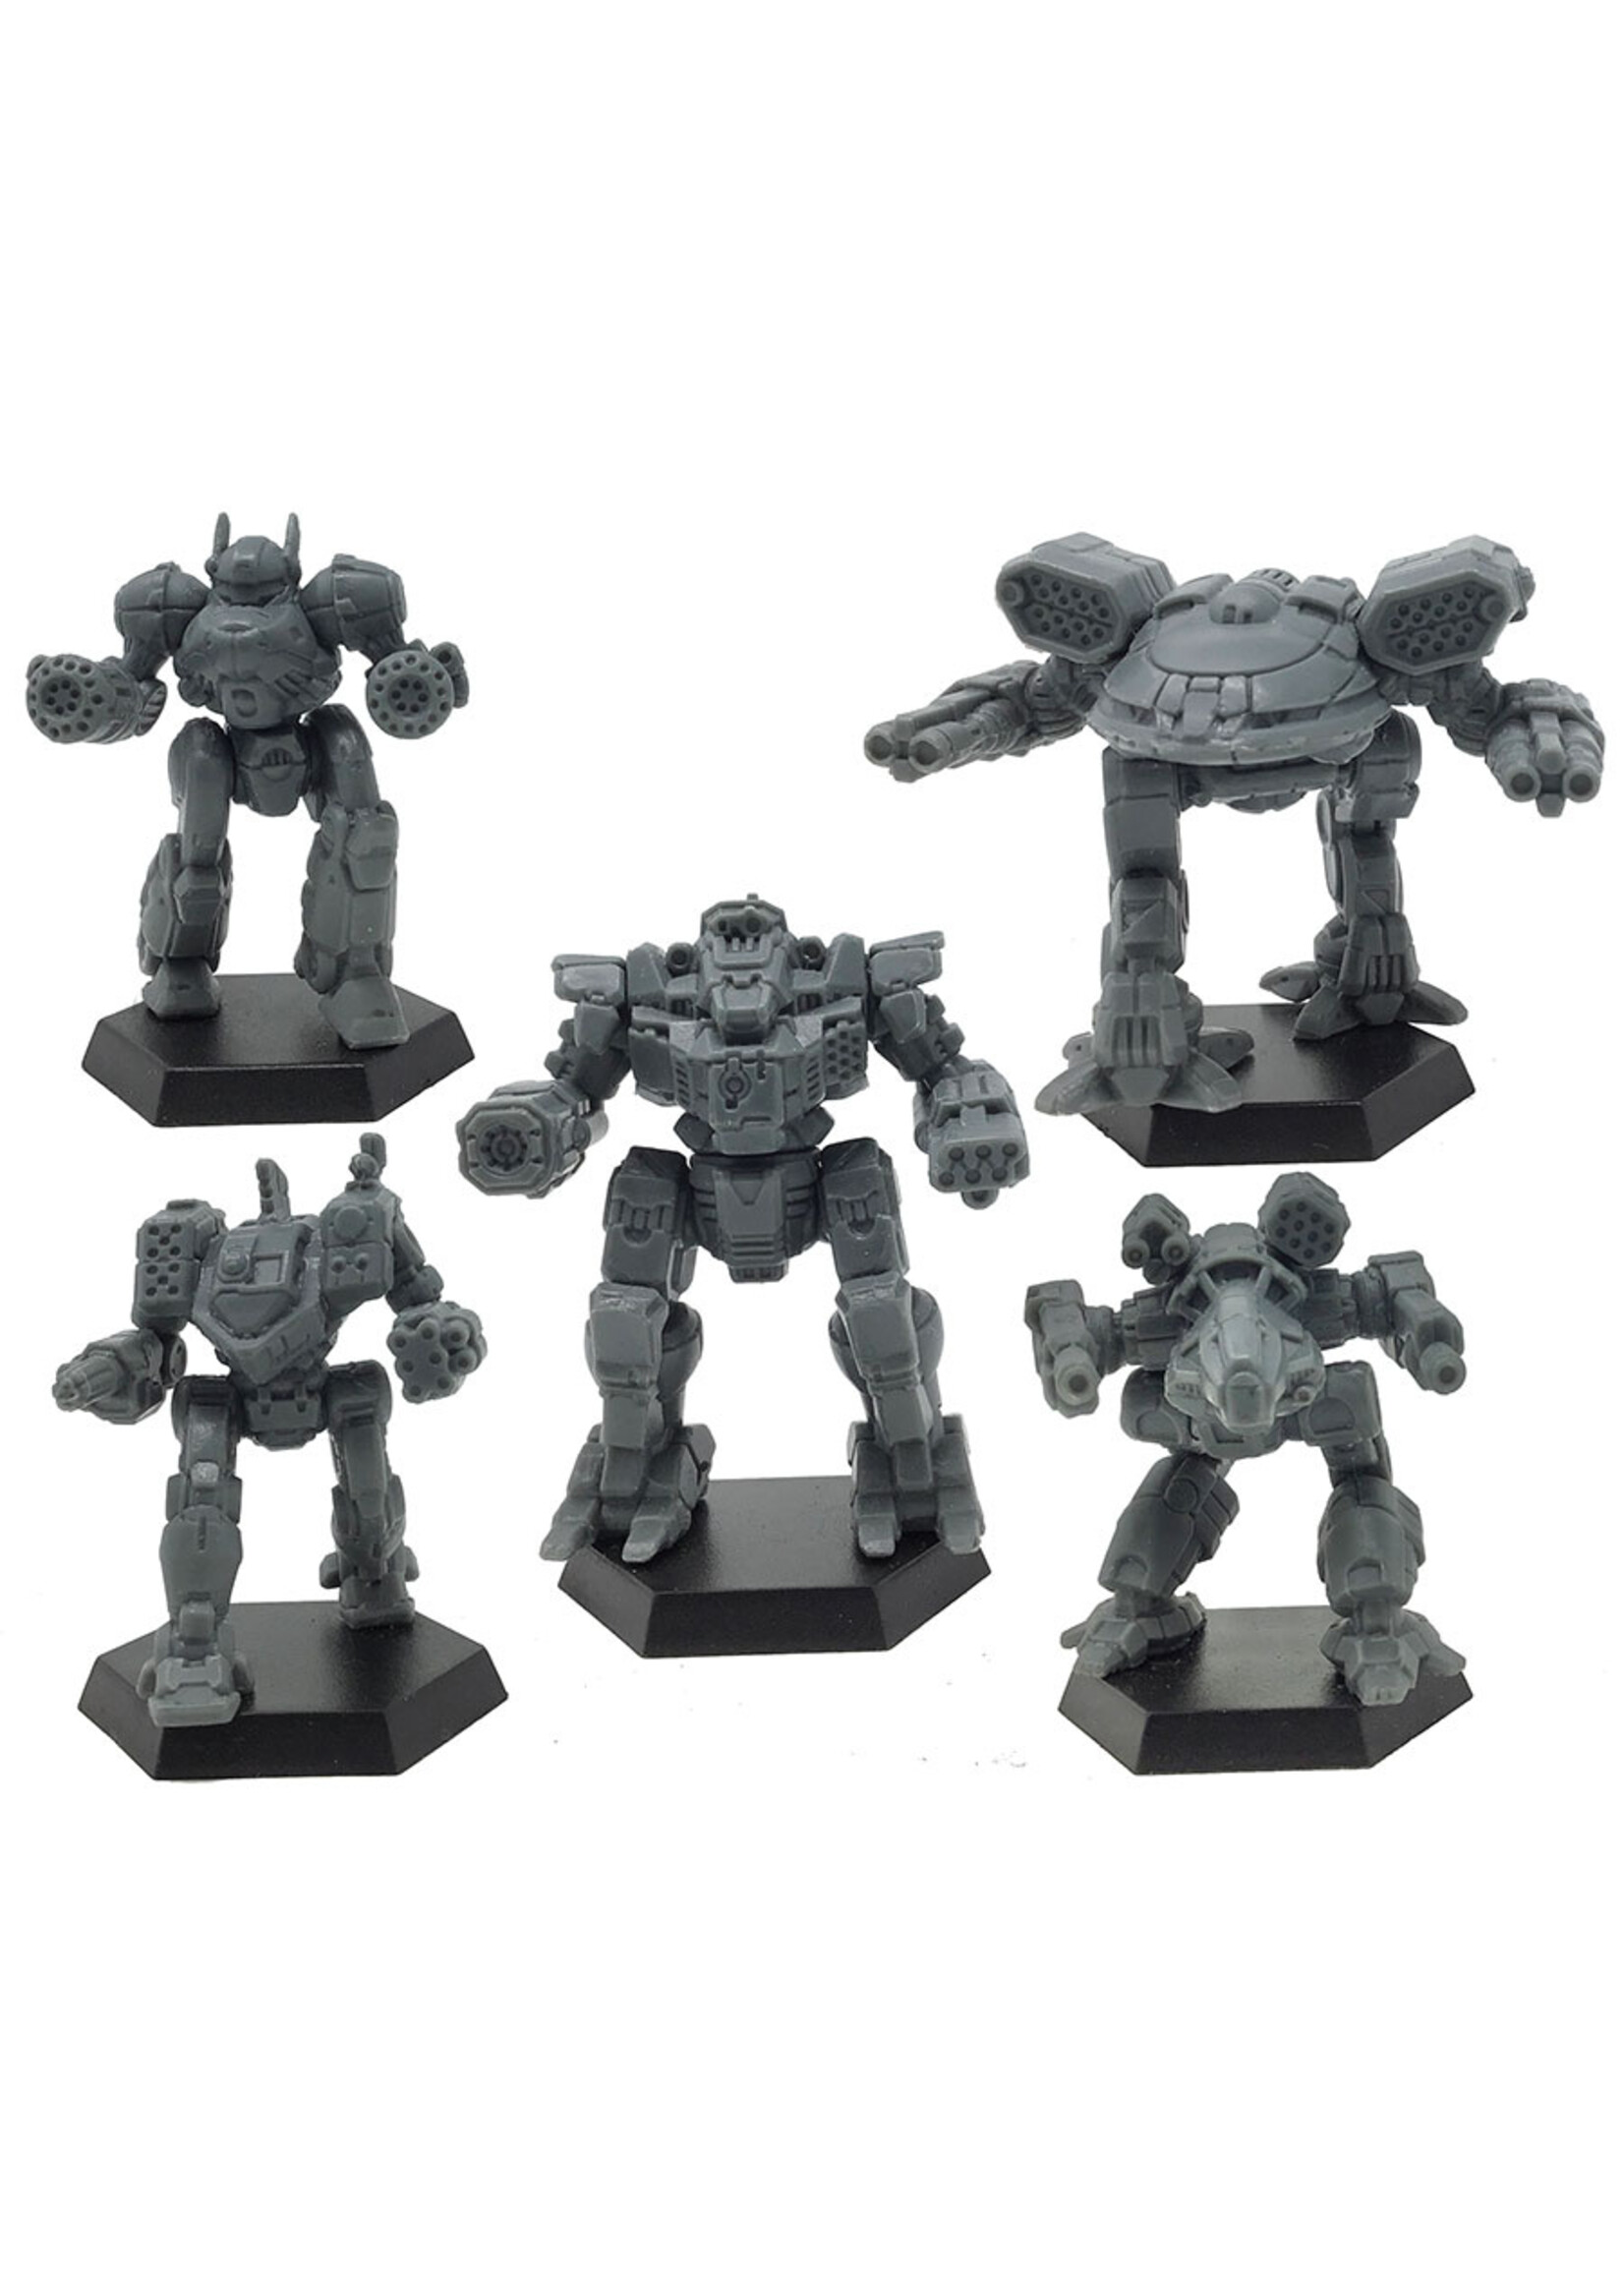 Battletech Battletech: Miniature Force Pack Clan Heavy Star